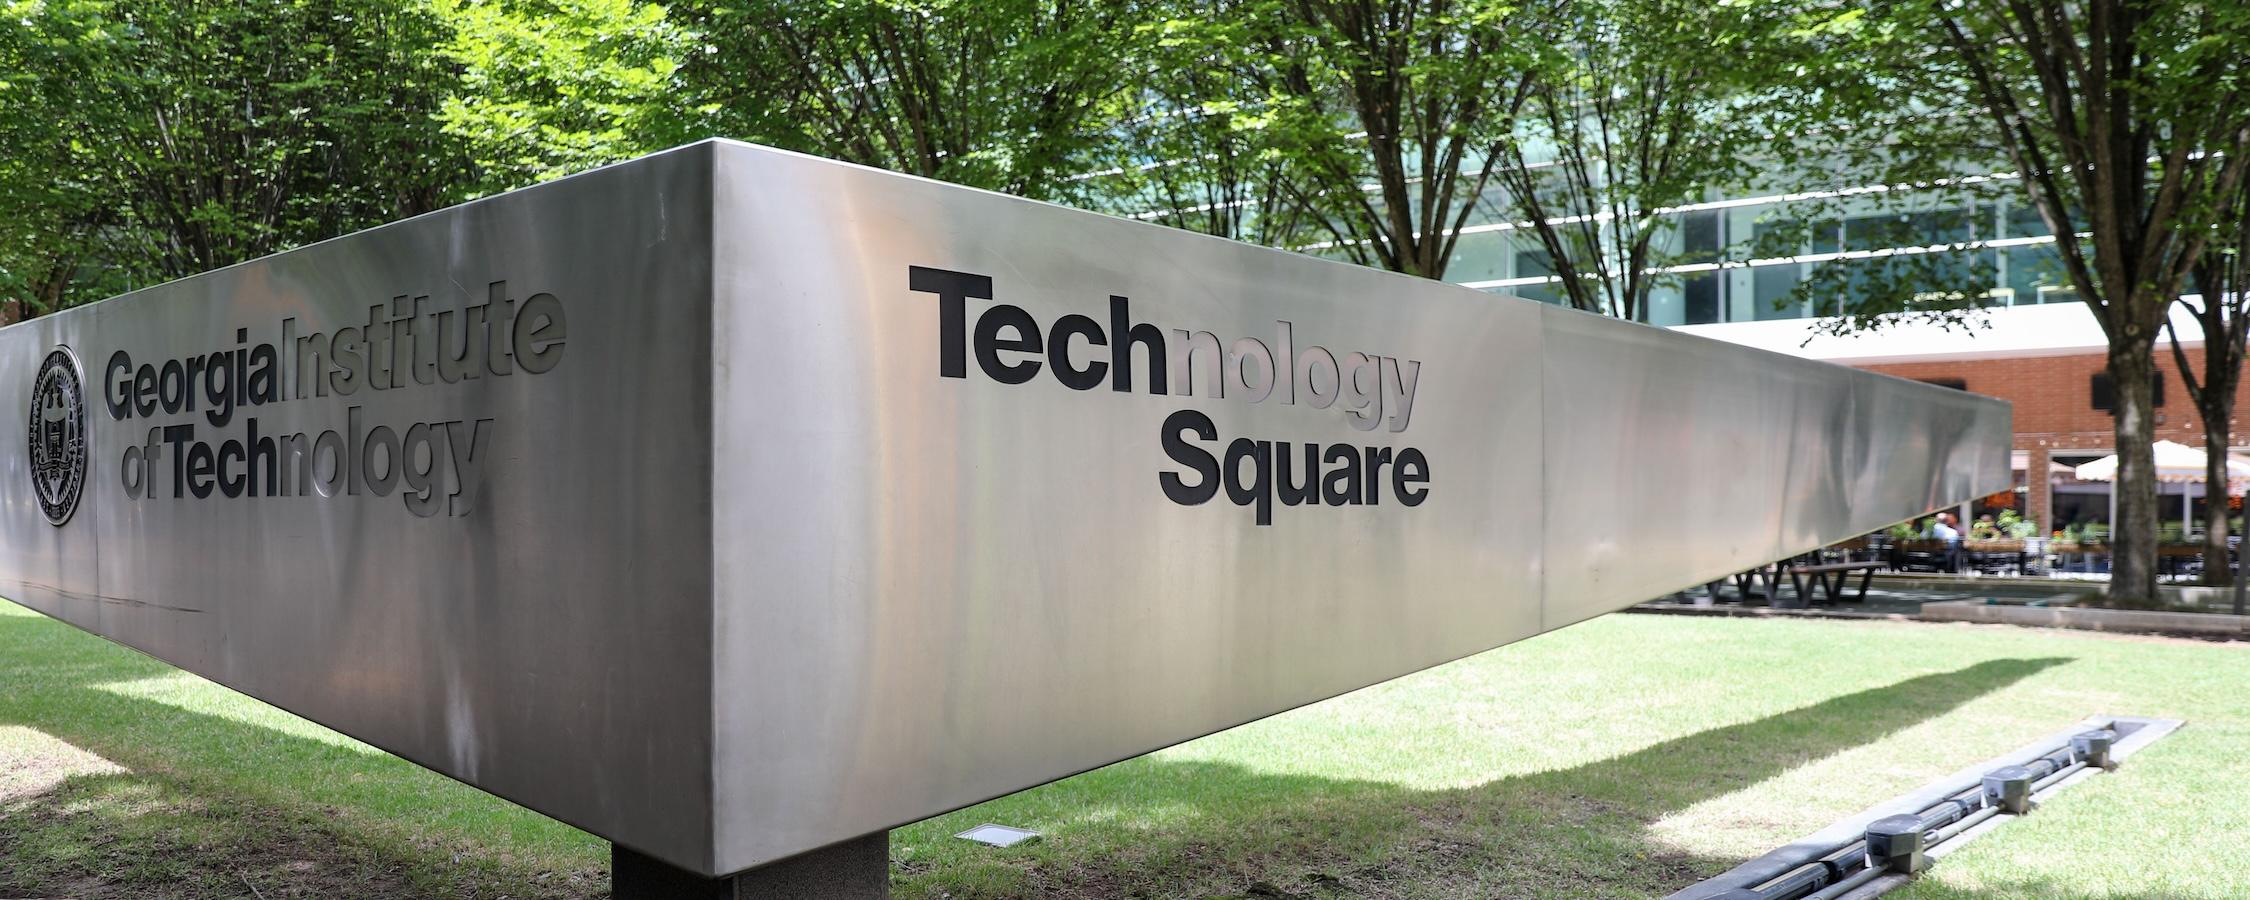 Georgia Tech Technology Square